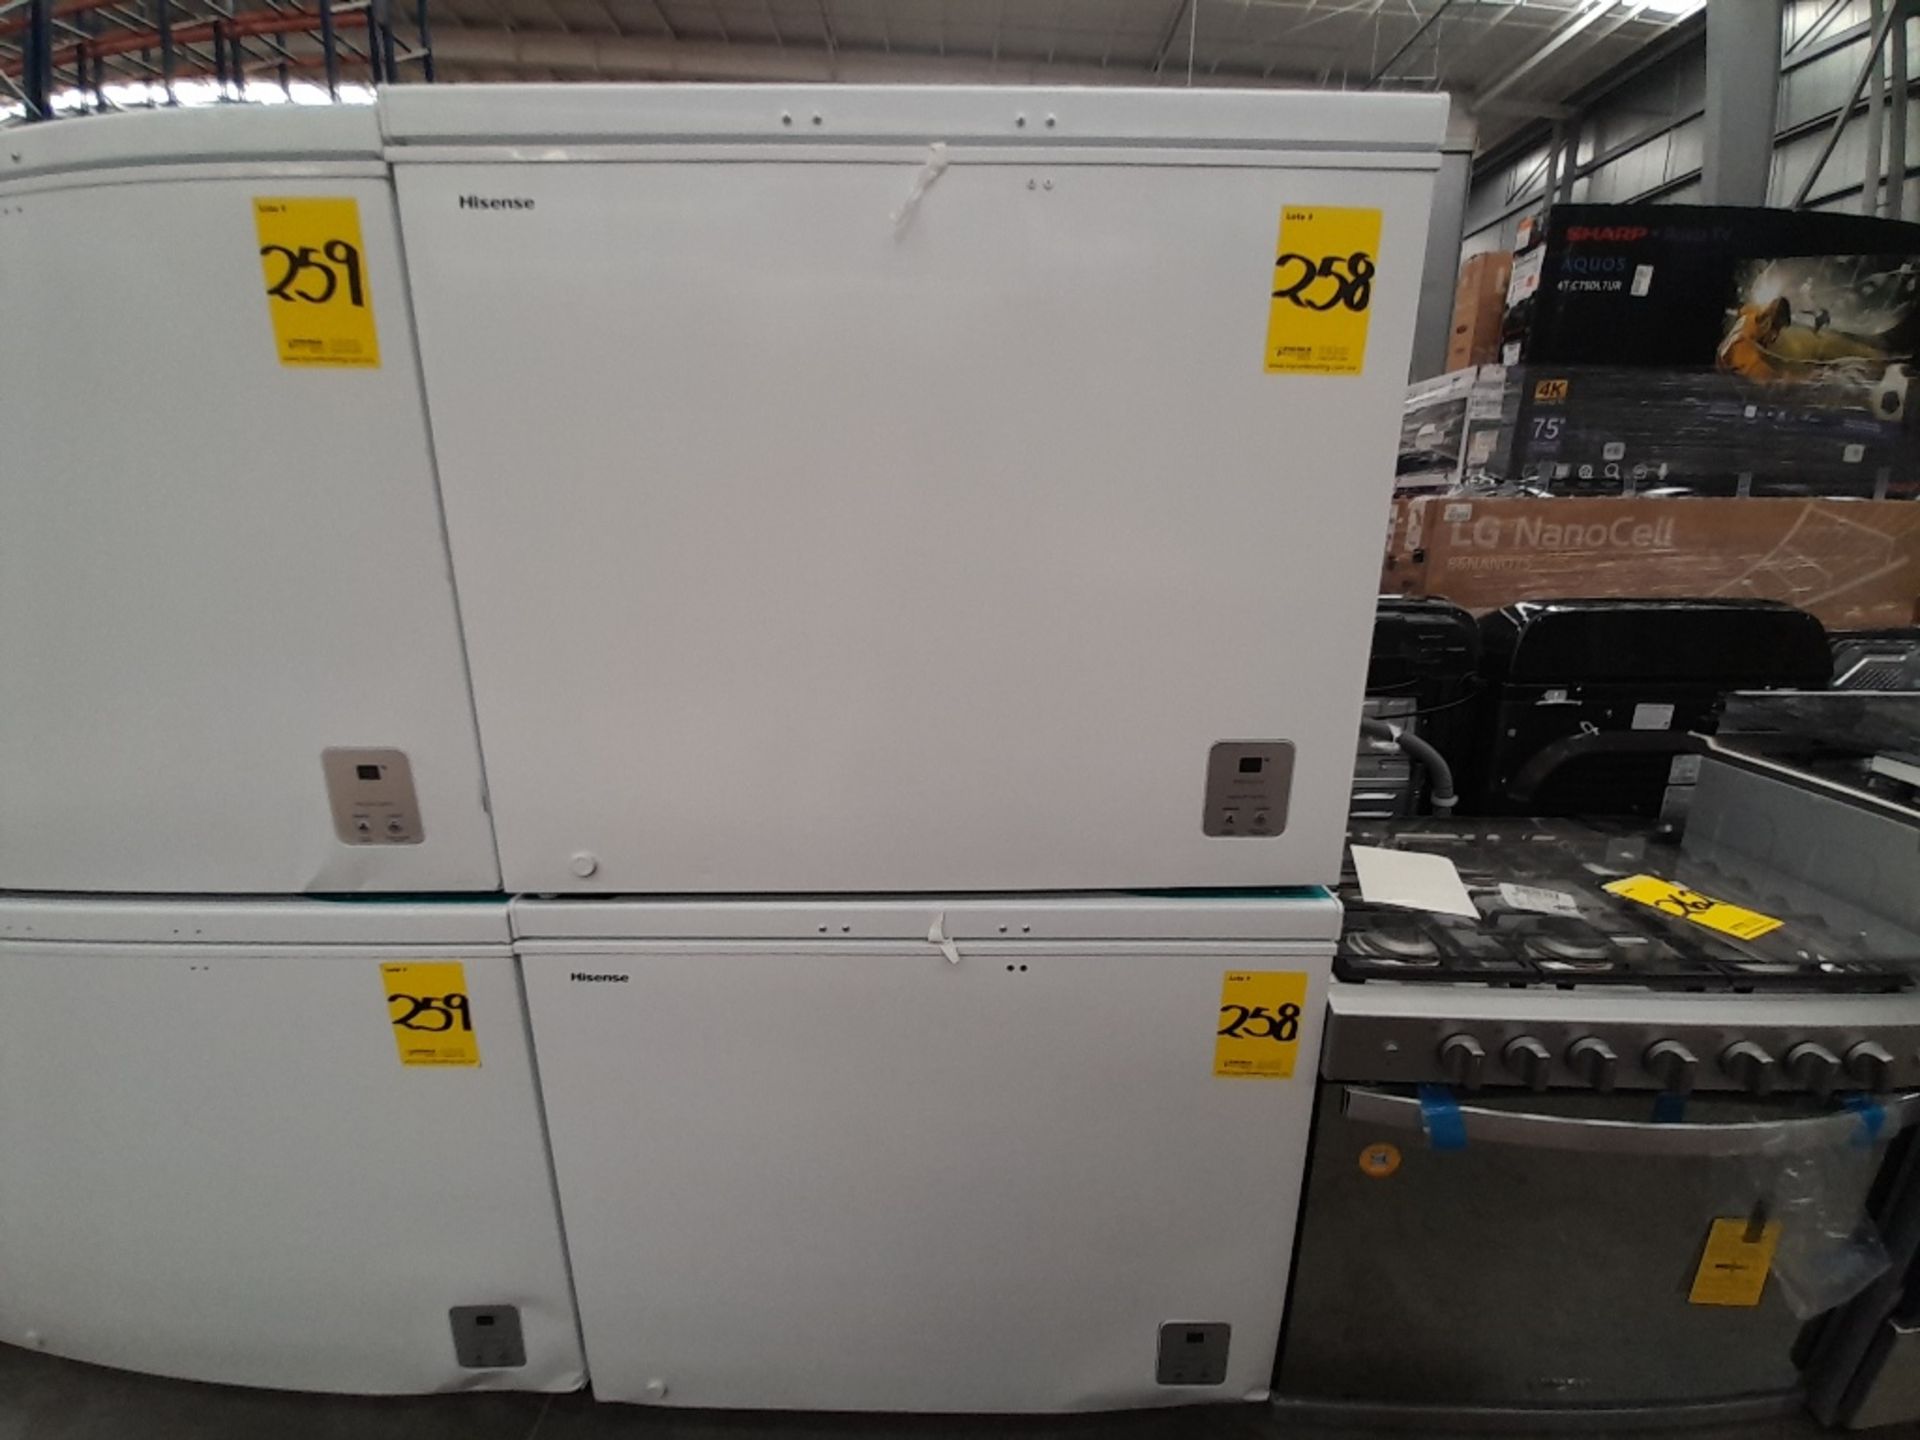 Lote de 2 congeladores contiene: 1 congelador Marca HISENSE, Modelo LB657, Serie ND, Color BLANCO; - Image 4 of 7